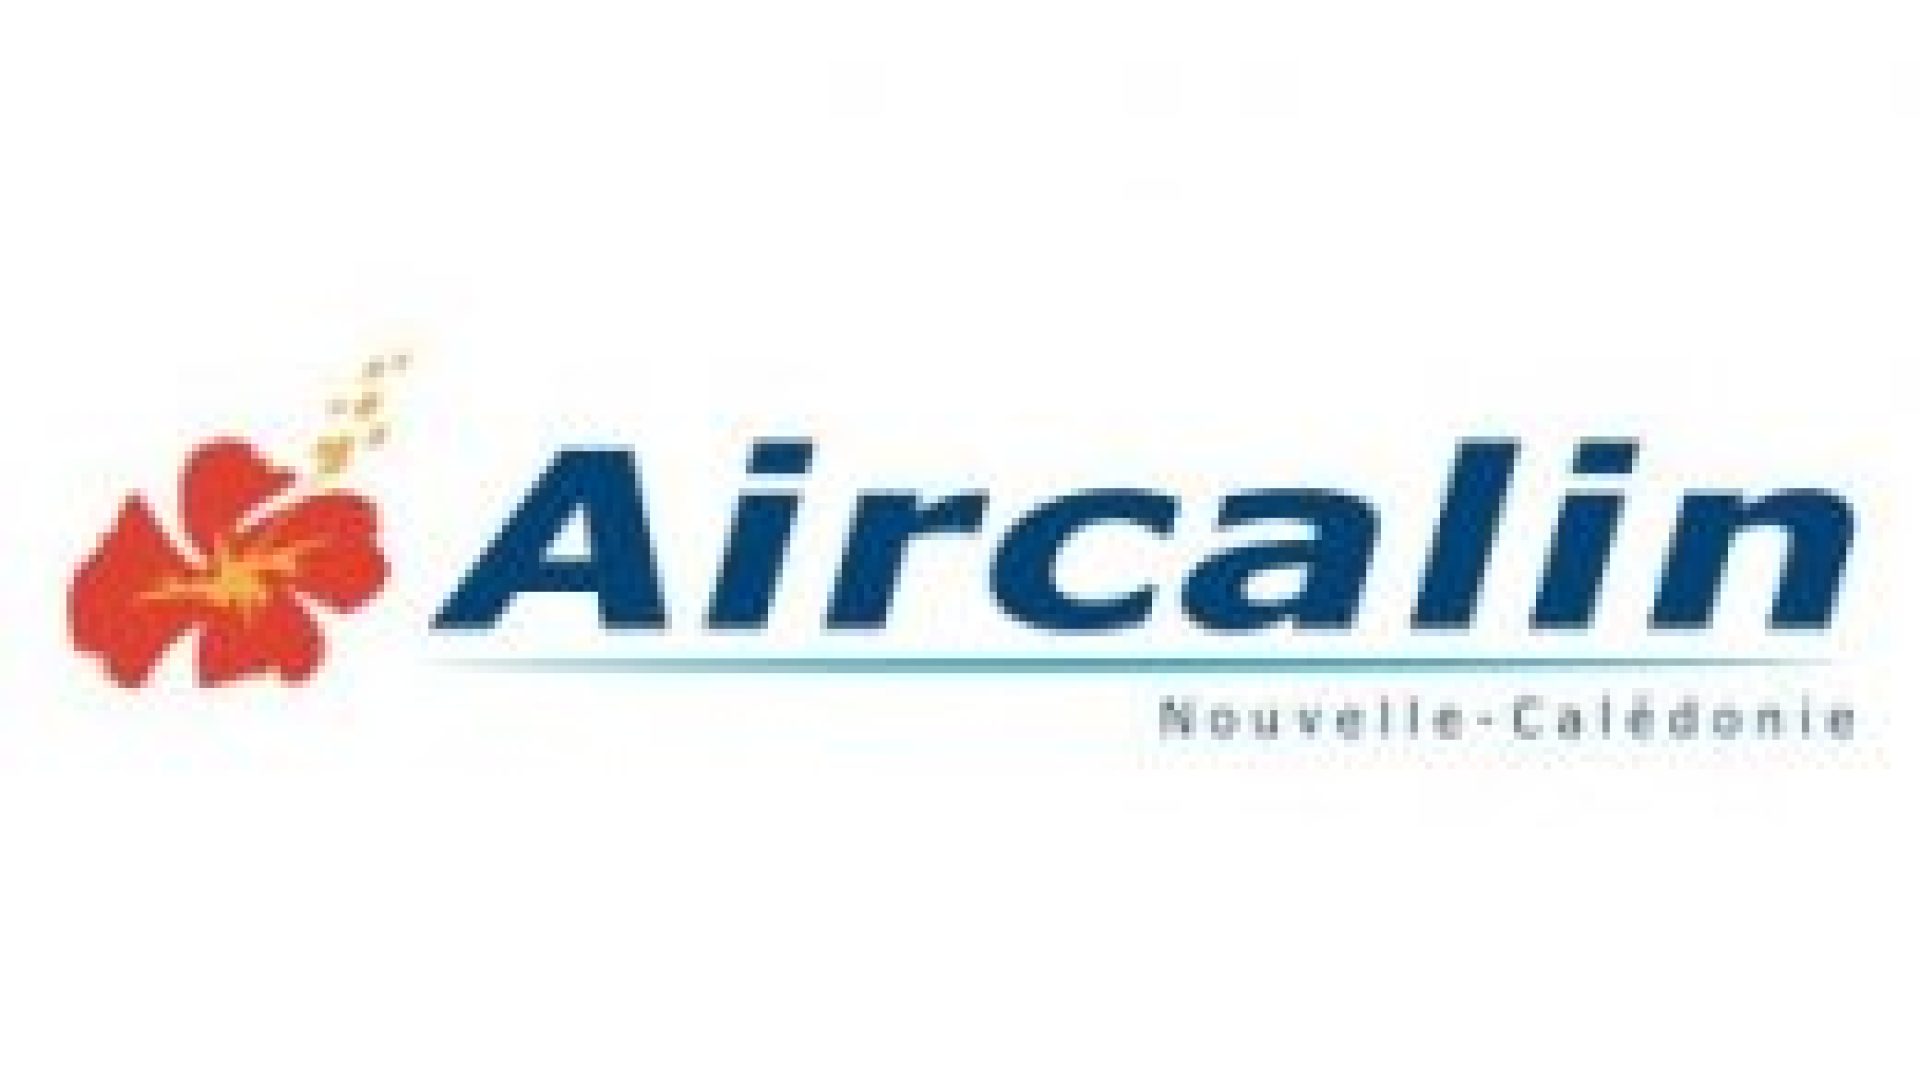 997-cover-logo-aircalin